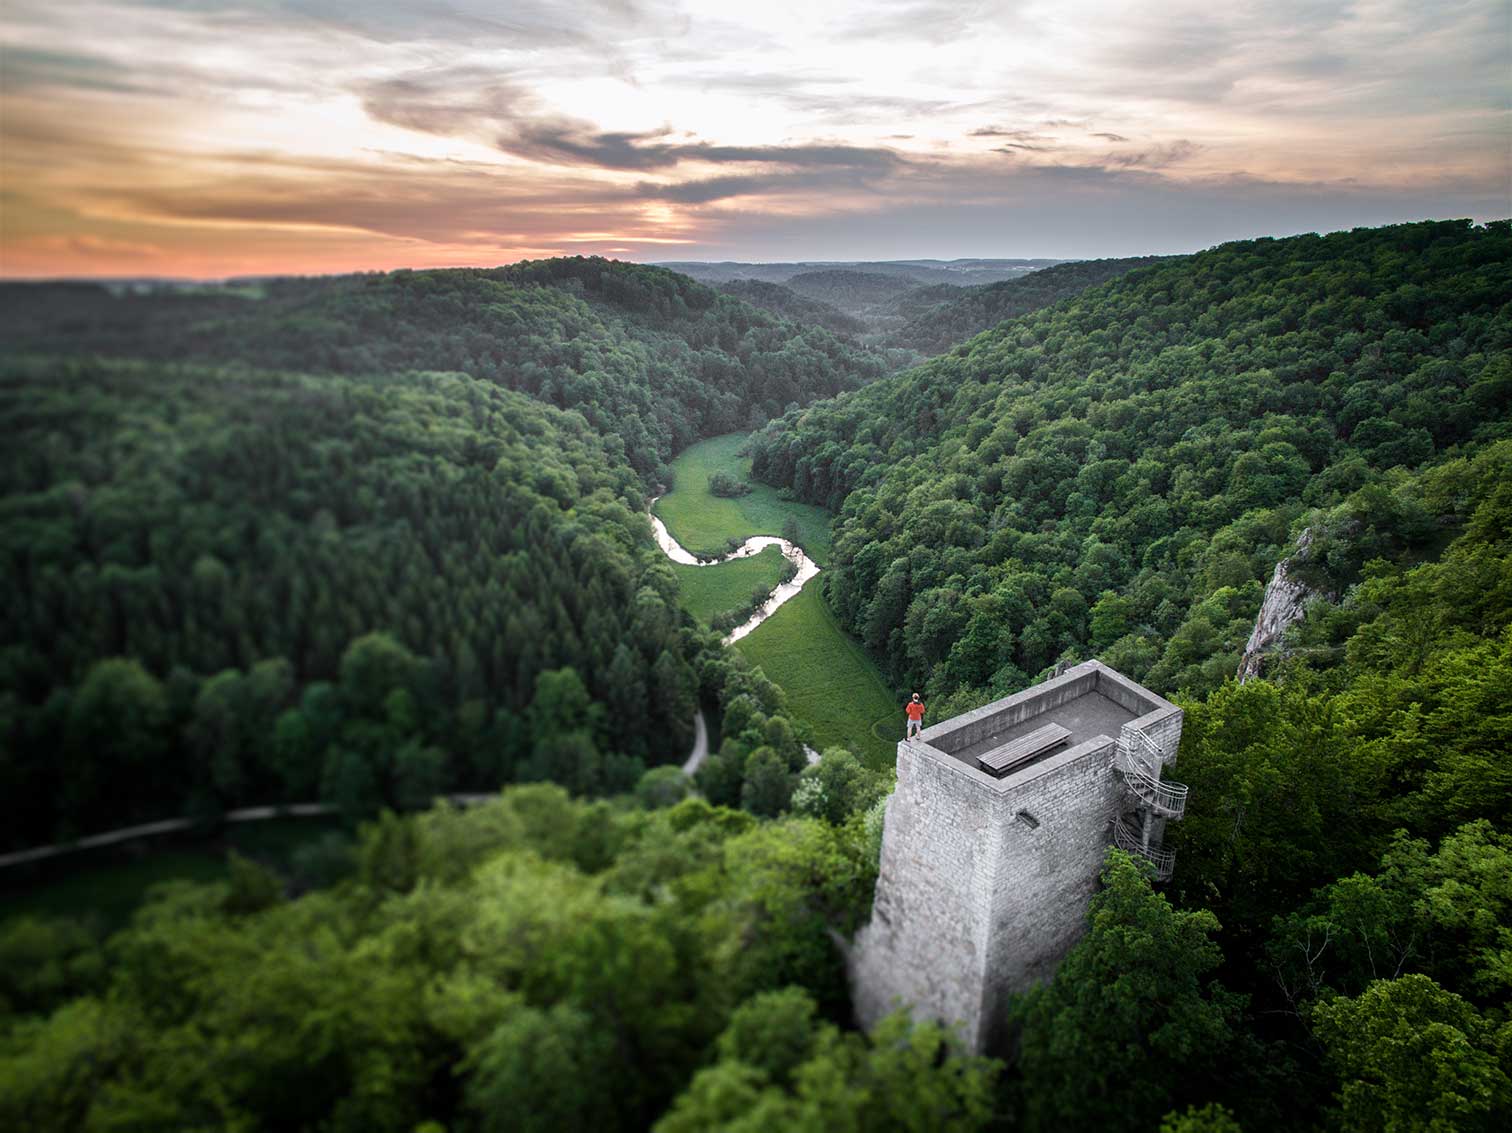 Foto vom Großen Lautertal aus der Vogelperspektive. Man sieht auch die Burgruine Wartstein, auf der ein Wanderer ins Tal blickt.